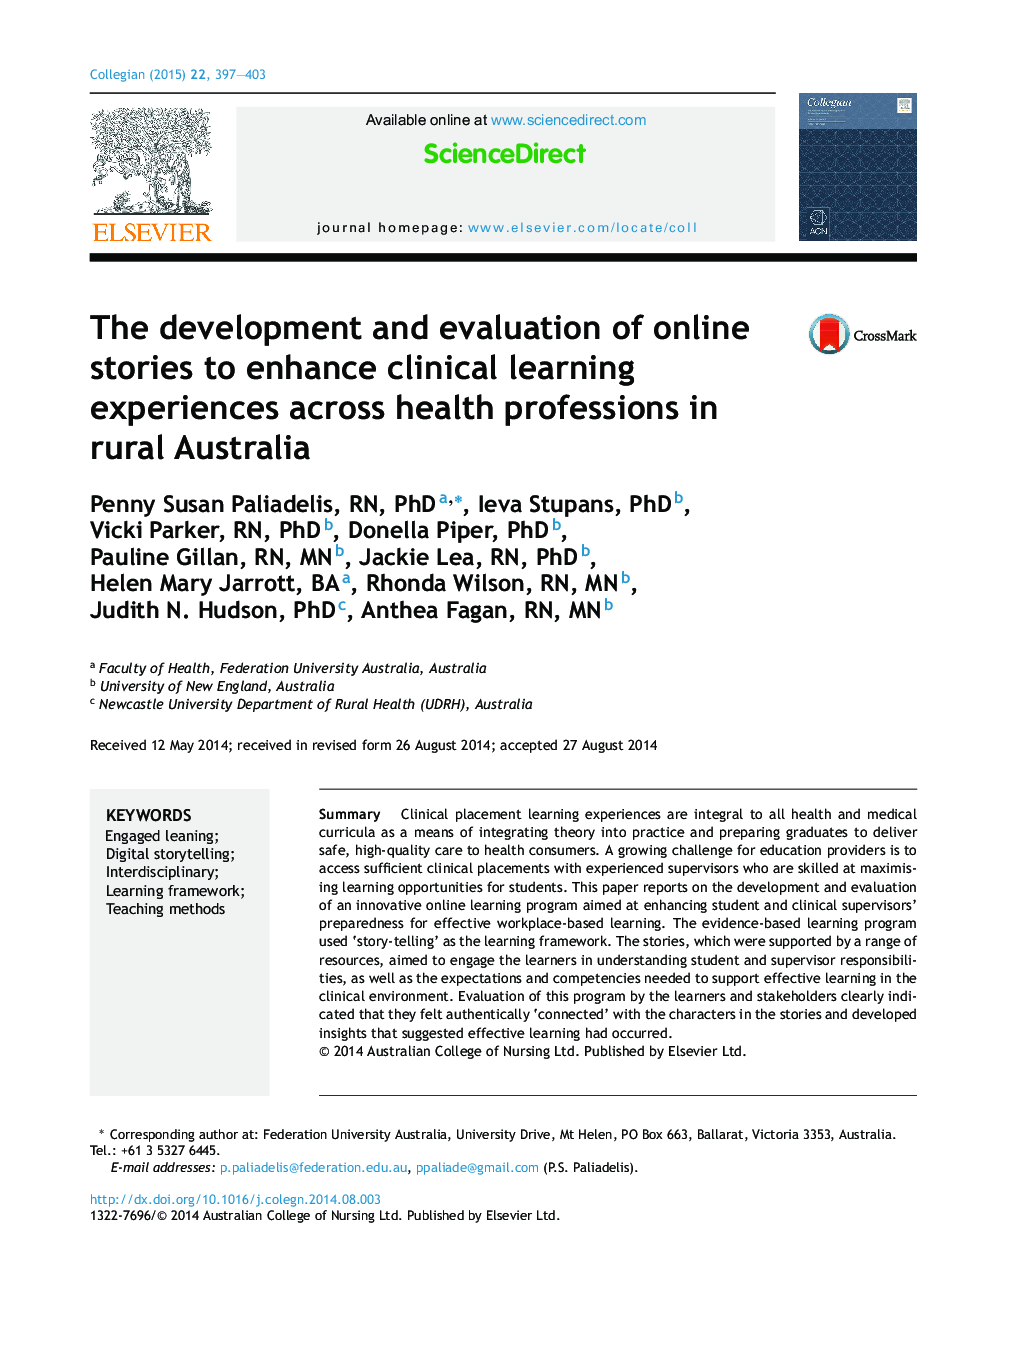 توسعه و ارزیابی داستان های آنلاین برای افزایش تجربه یادگیری بالینی در حرفه های بهداشتی در استرالیا روستایی 